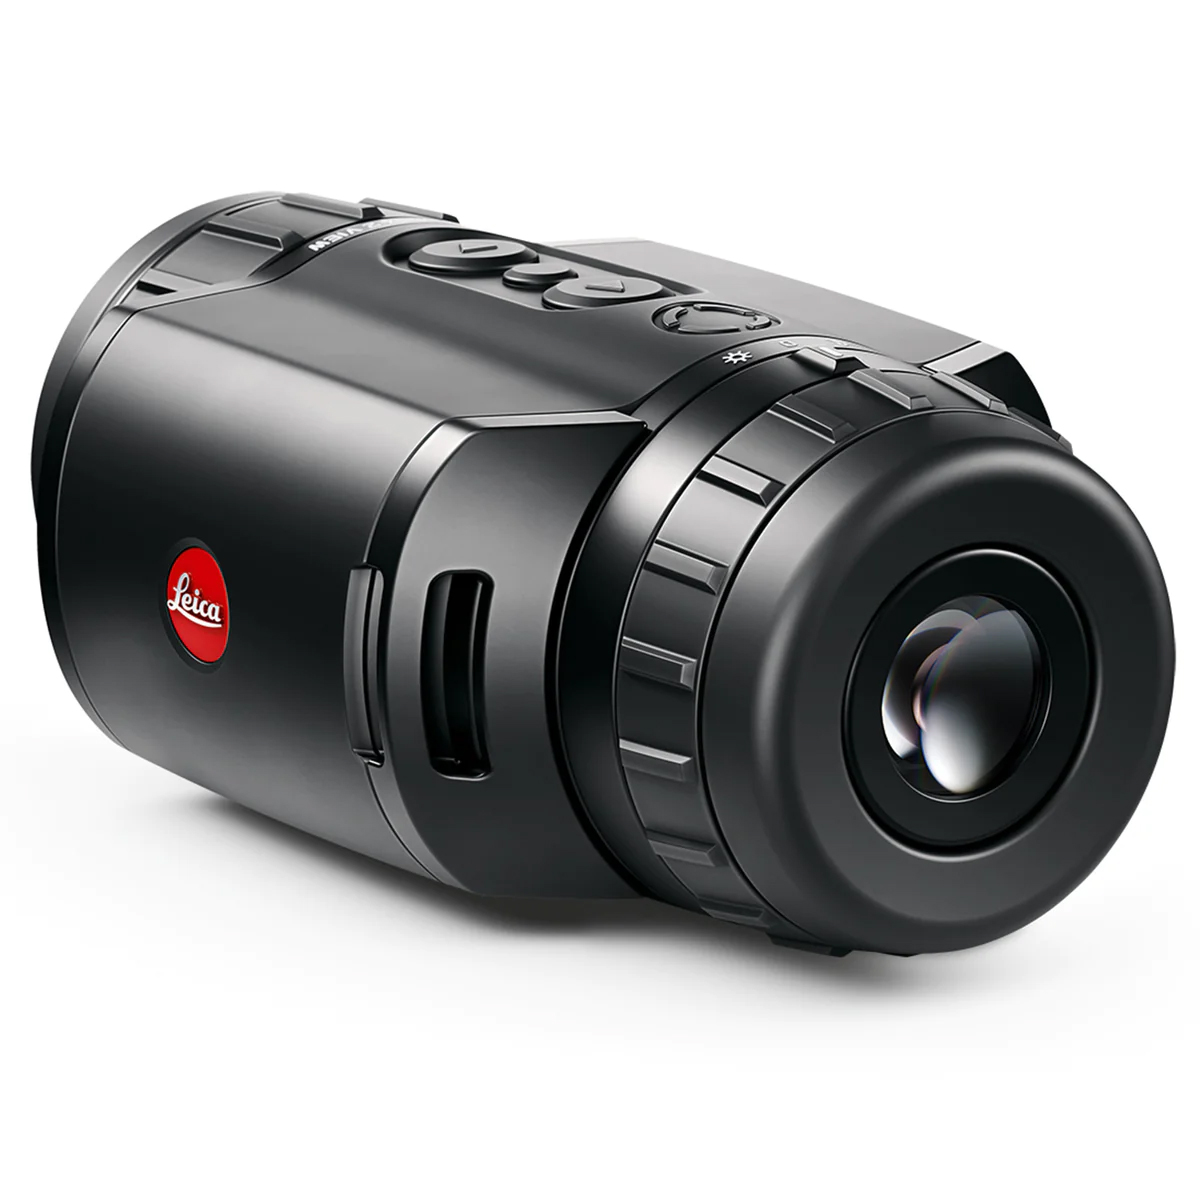 Leica Wärmebildgerät Calonox 2 View LRF  großes Sehfeld  detailreiches Bild  direkt einsatzbereit 